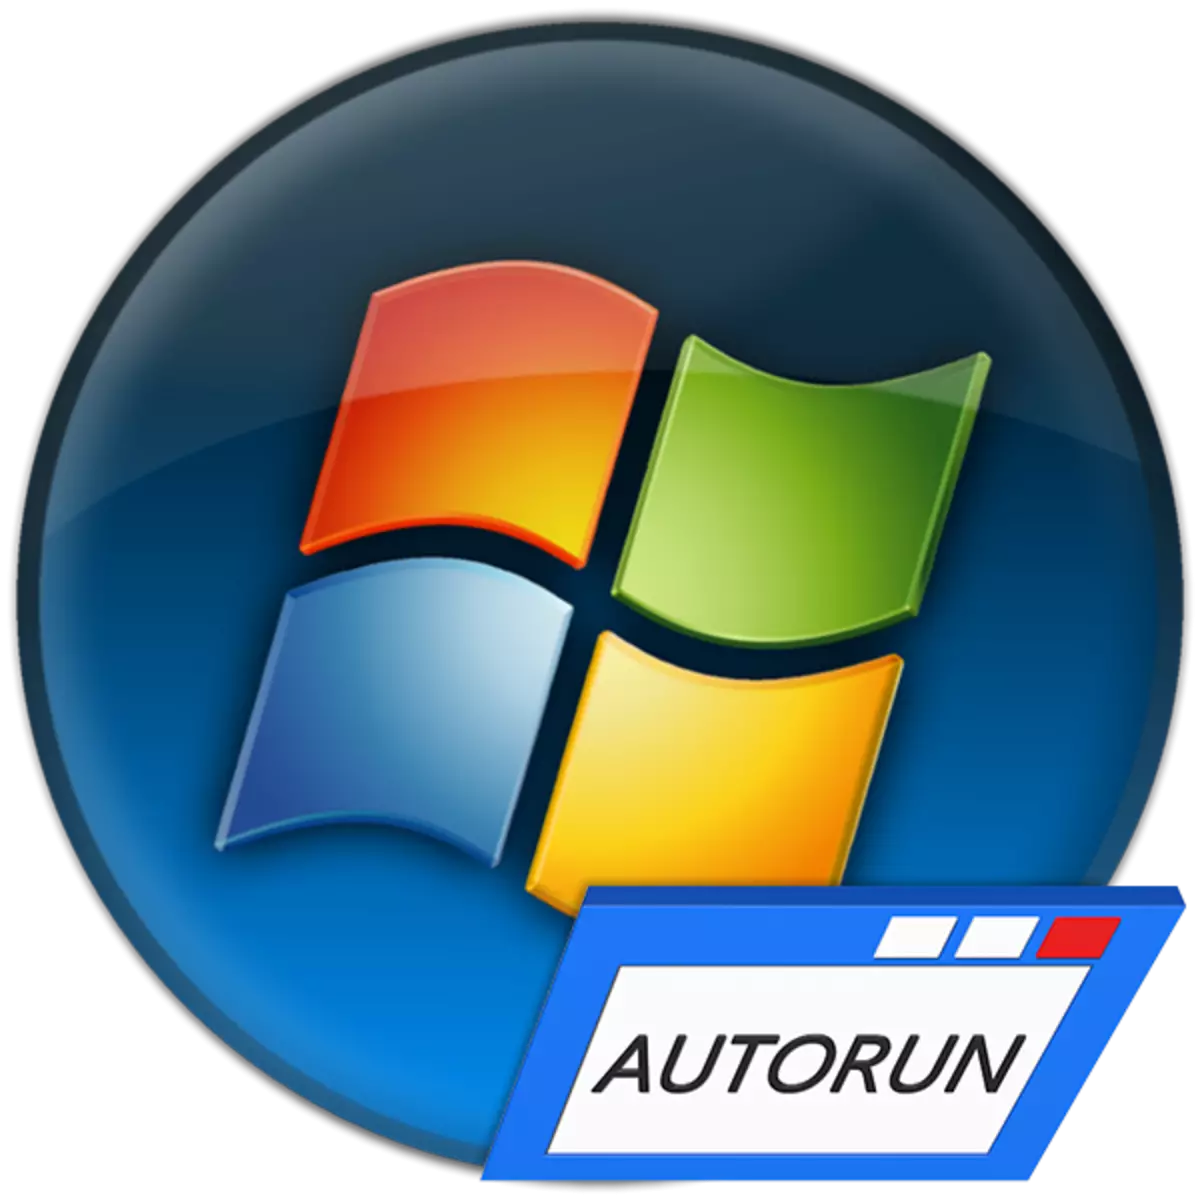 Autorun ծրագրերը տեղադրելը Windows 7-ում